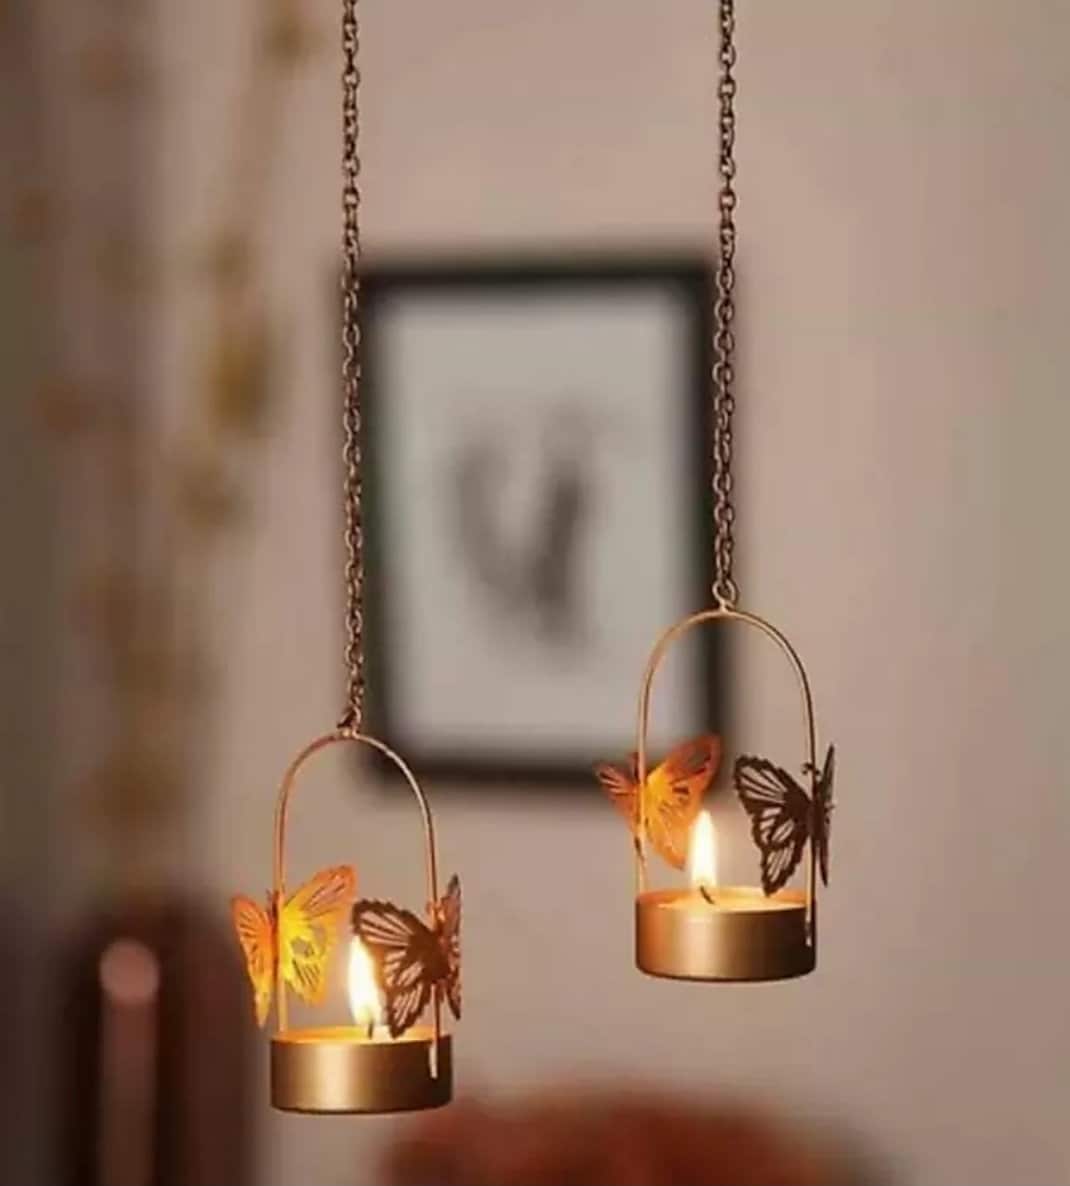 Housewarming Gift Iron Lantern Indian Diwali Gift Decorative Hanging Pack Of 2 Metal Wall Hanging Tealight Candle Holder Birthday Gift